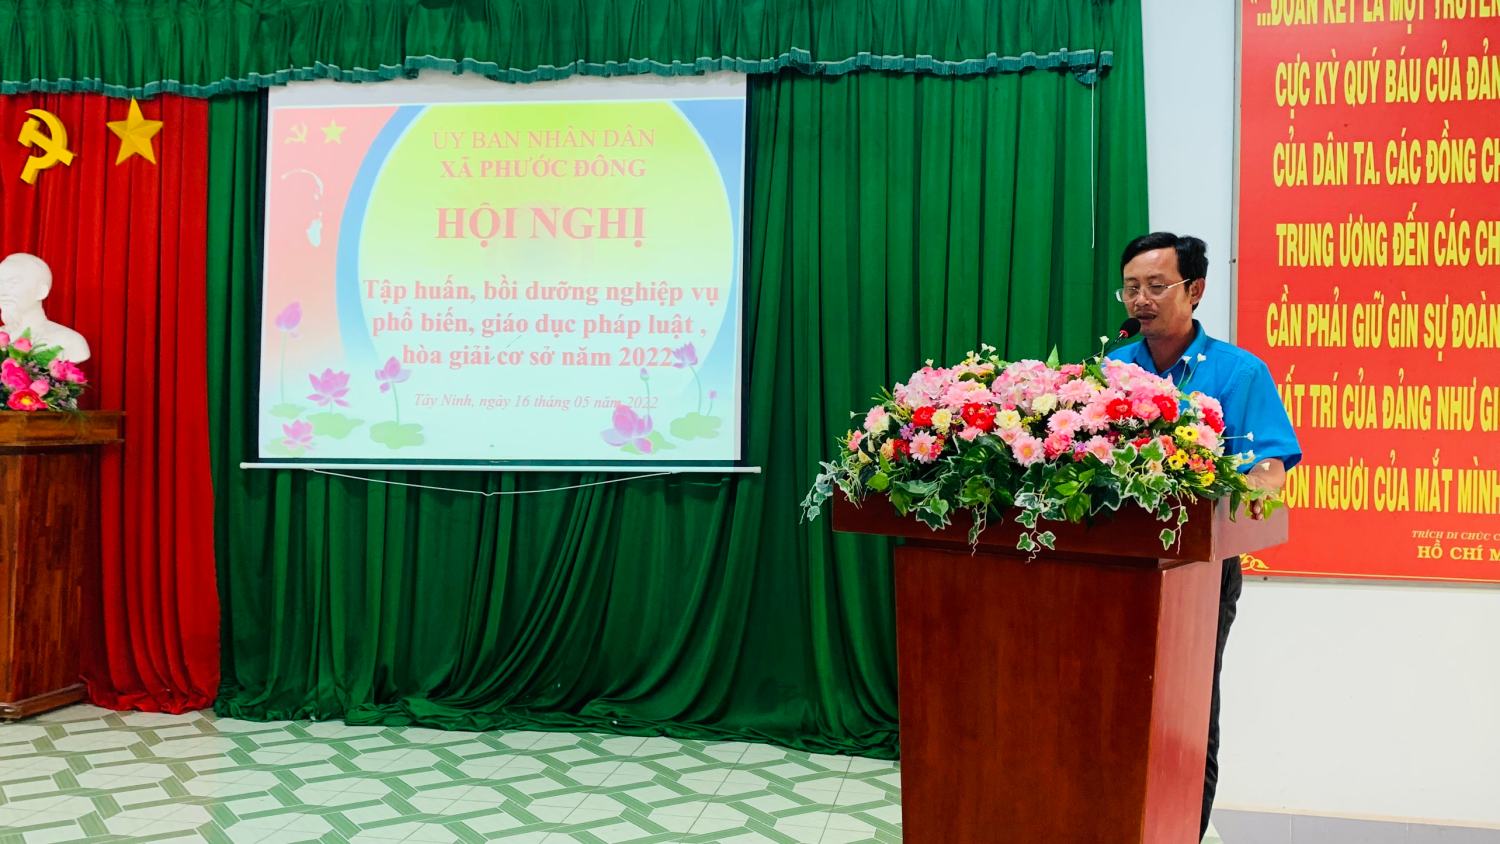 Ảnh: Ông Huỳnh Văn Út, Phó chủ tịch UBND xã Phước Đông